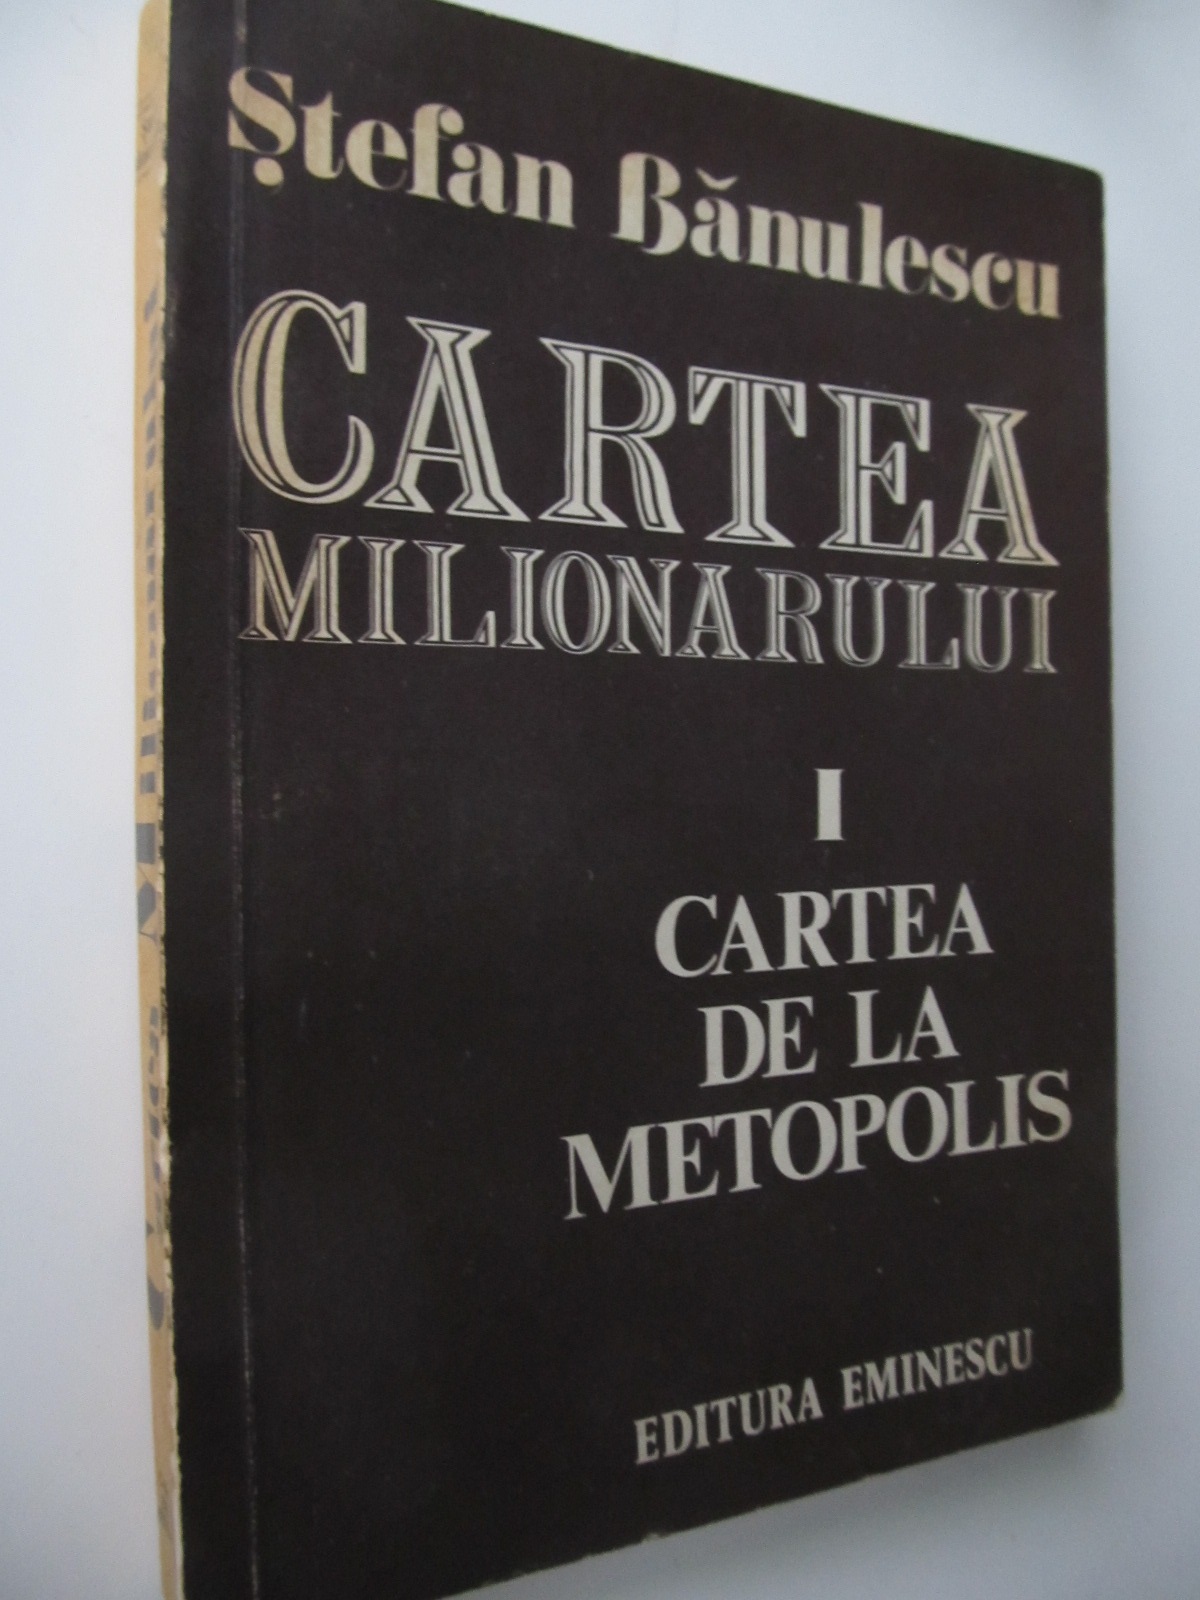 Cartea milionarului I - Cartea de la Metropolis - Stefan Banulescu | Detalii carte